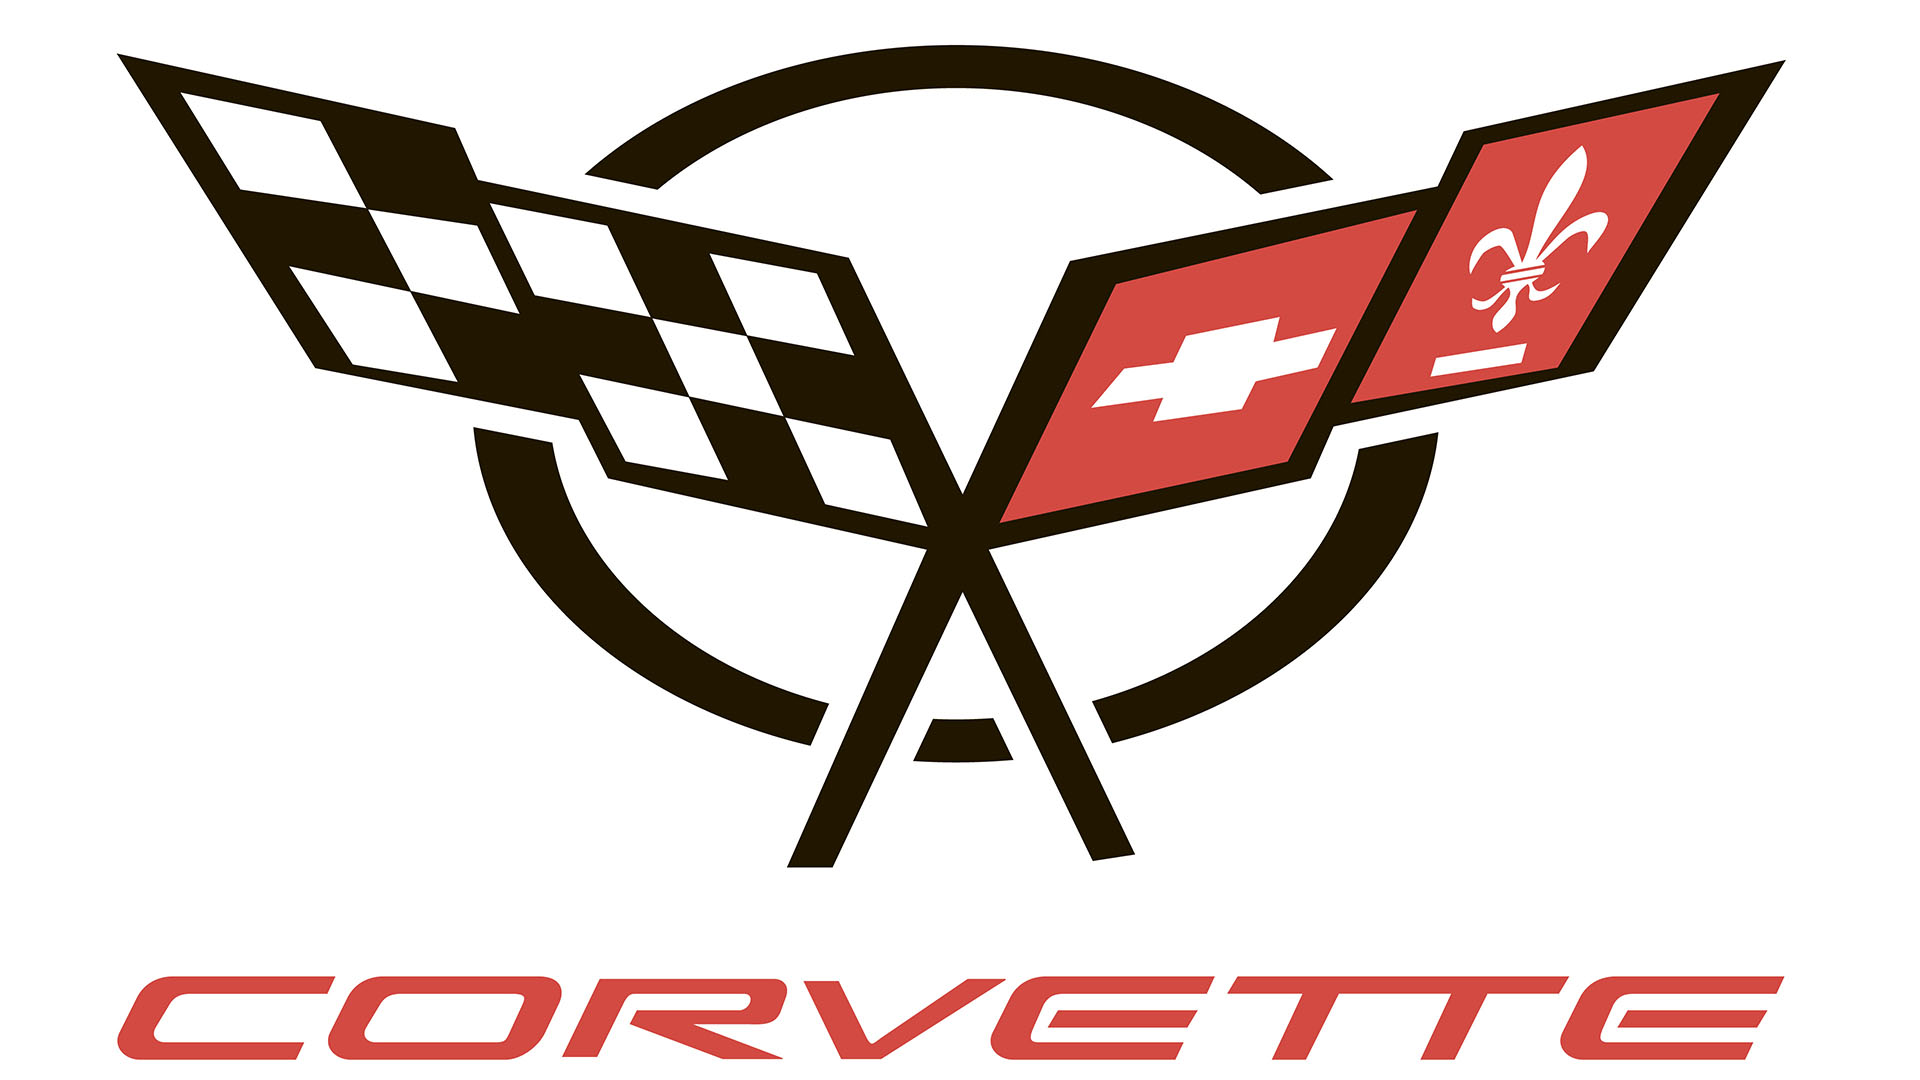 Corvette logo meaning